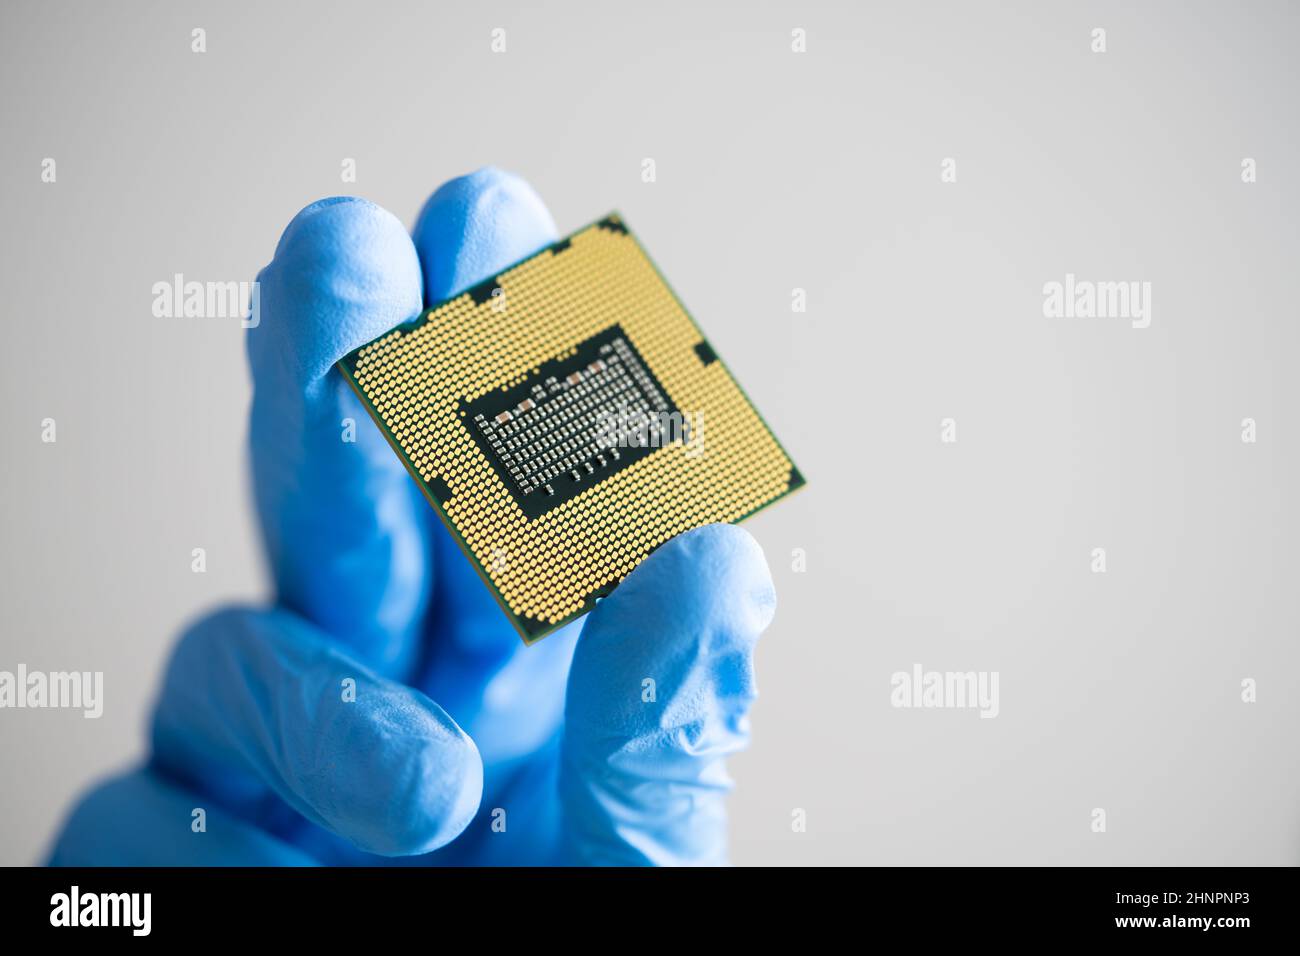 Computerprozessortechnologie. CPU Semiconductor Hardware in der Hand Stockfoto